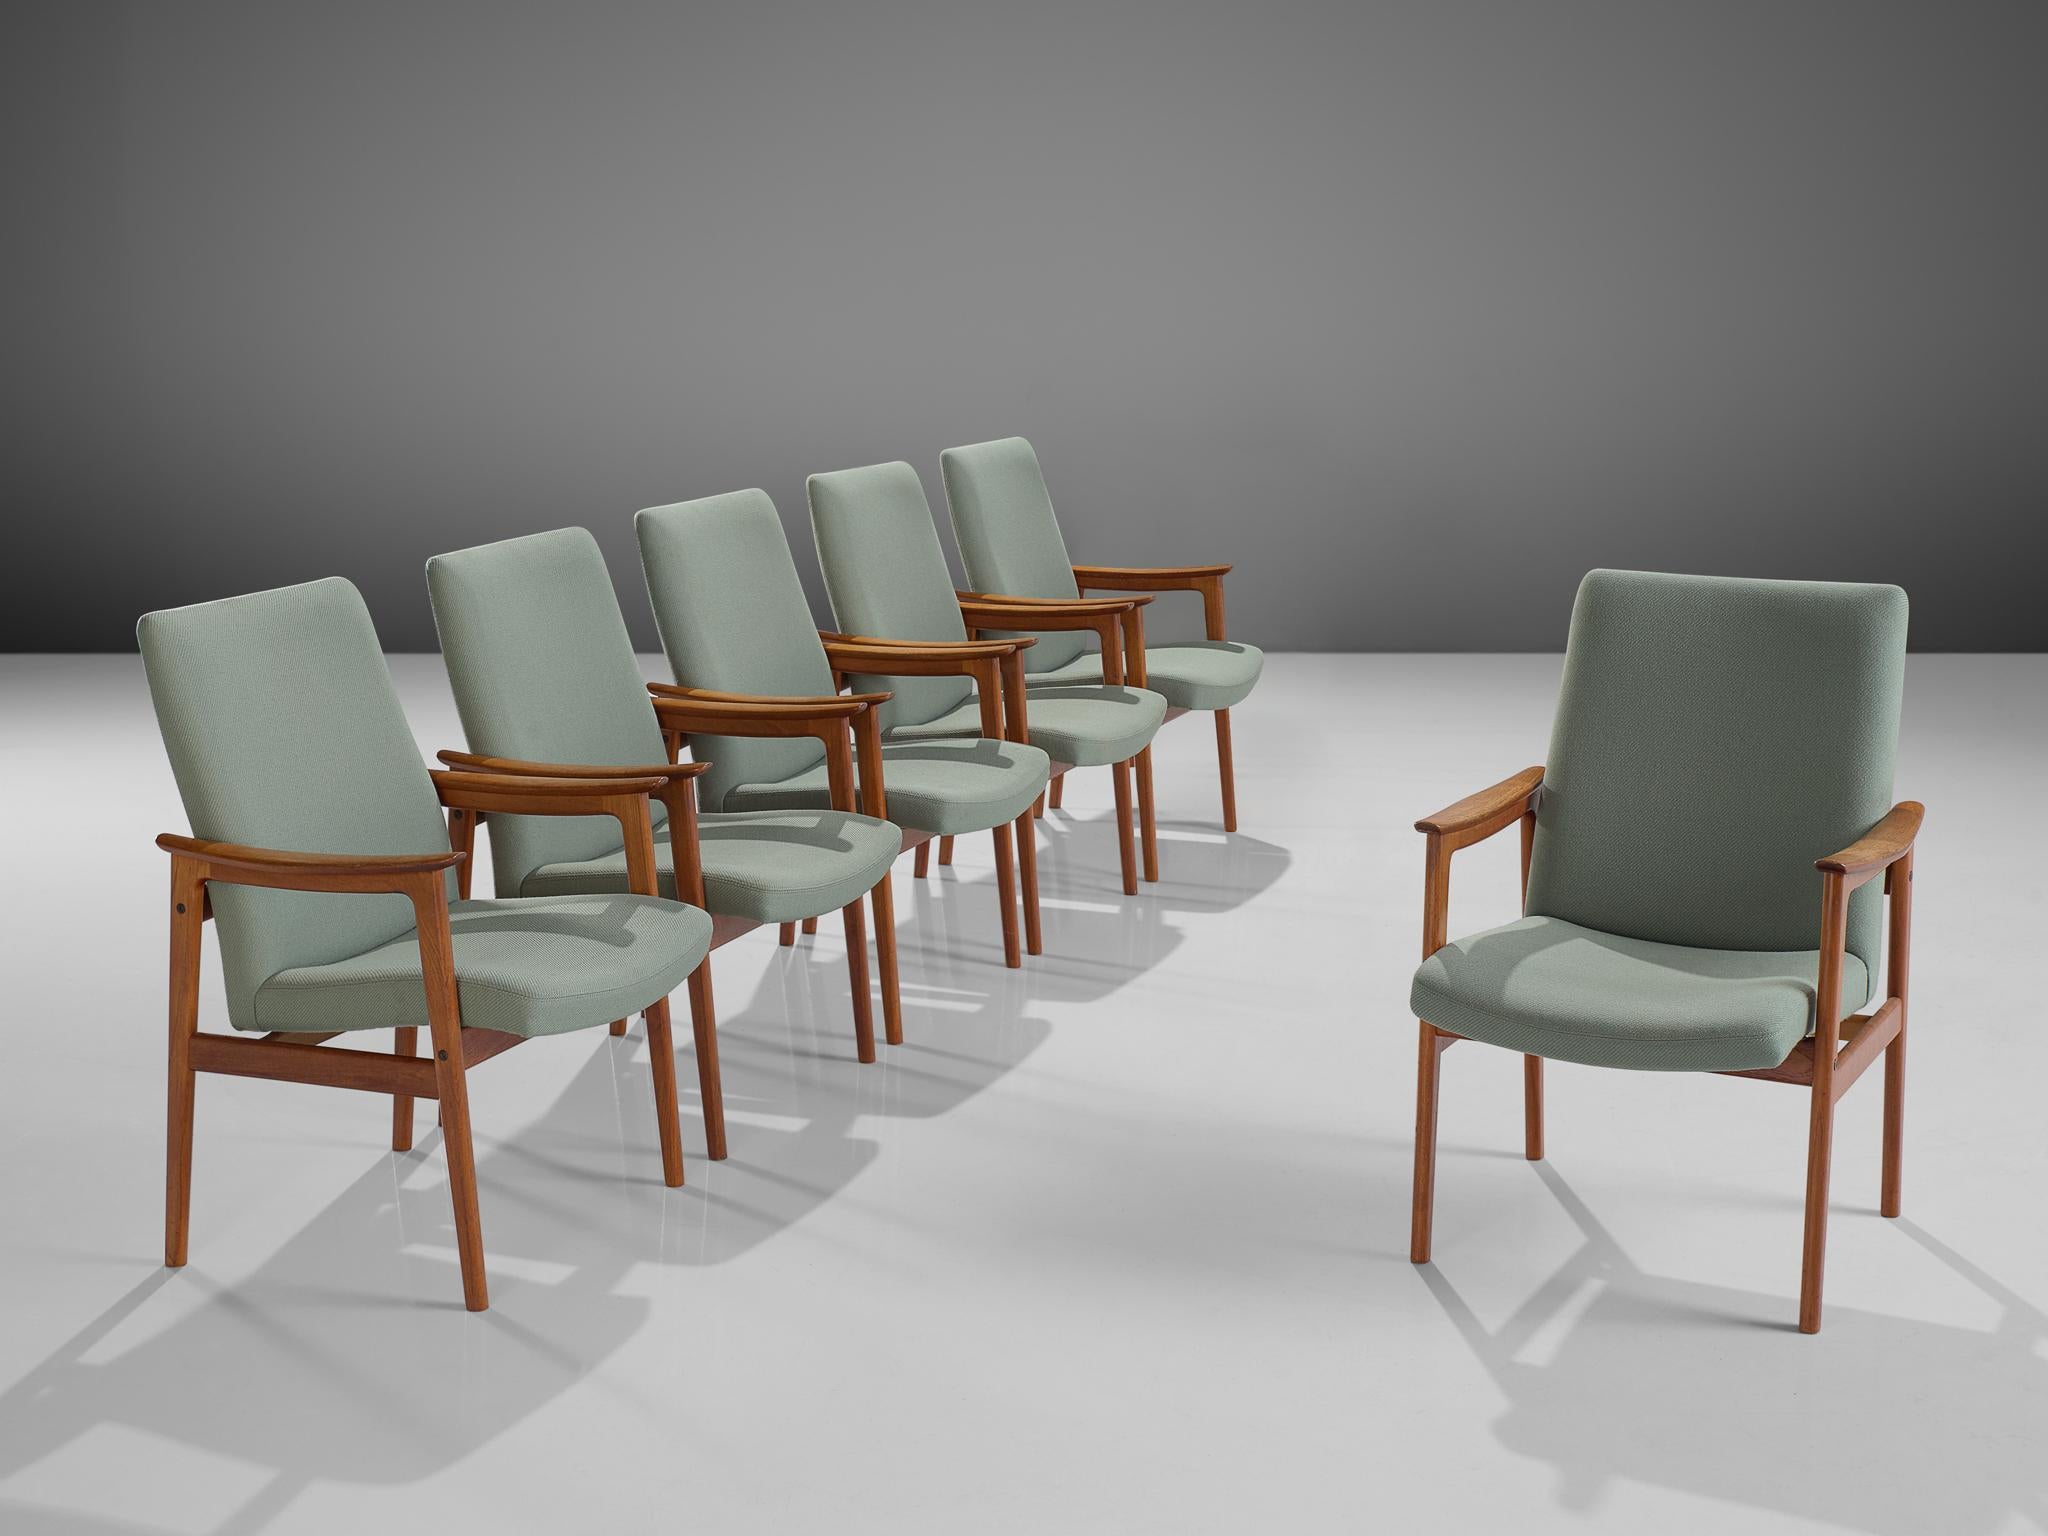 Ensemble de six fauteuils, teck et tissu vert menthe, Scandinavie, années 1950. 

Ces chaises de salle à manger scandinaves en teck avec accoudoirs sont à la fois majestueuses et modestes. Cet ensemble est doté d'un élégant cadre en teck avec un